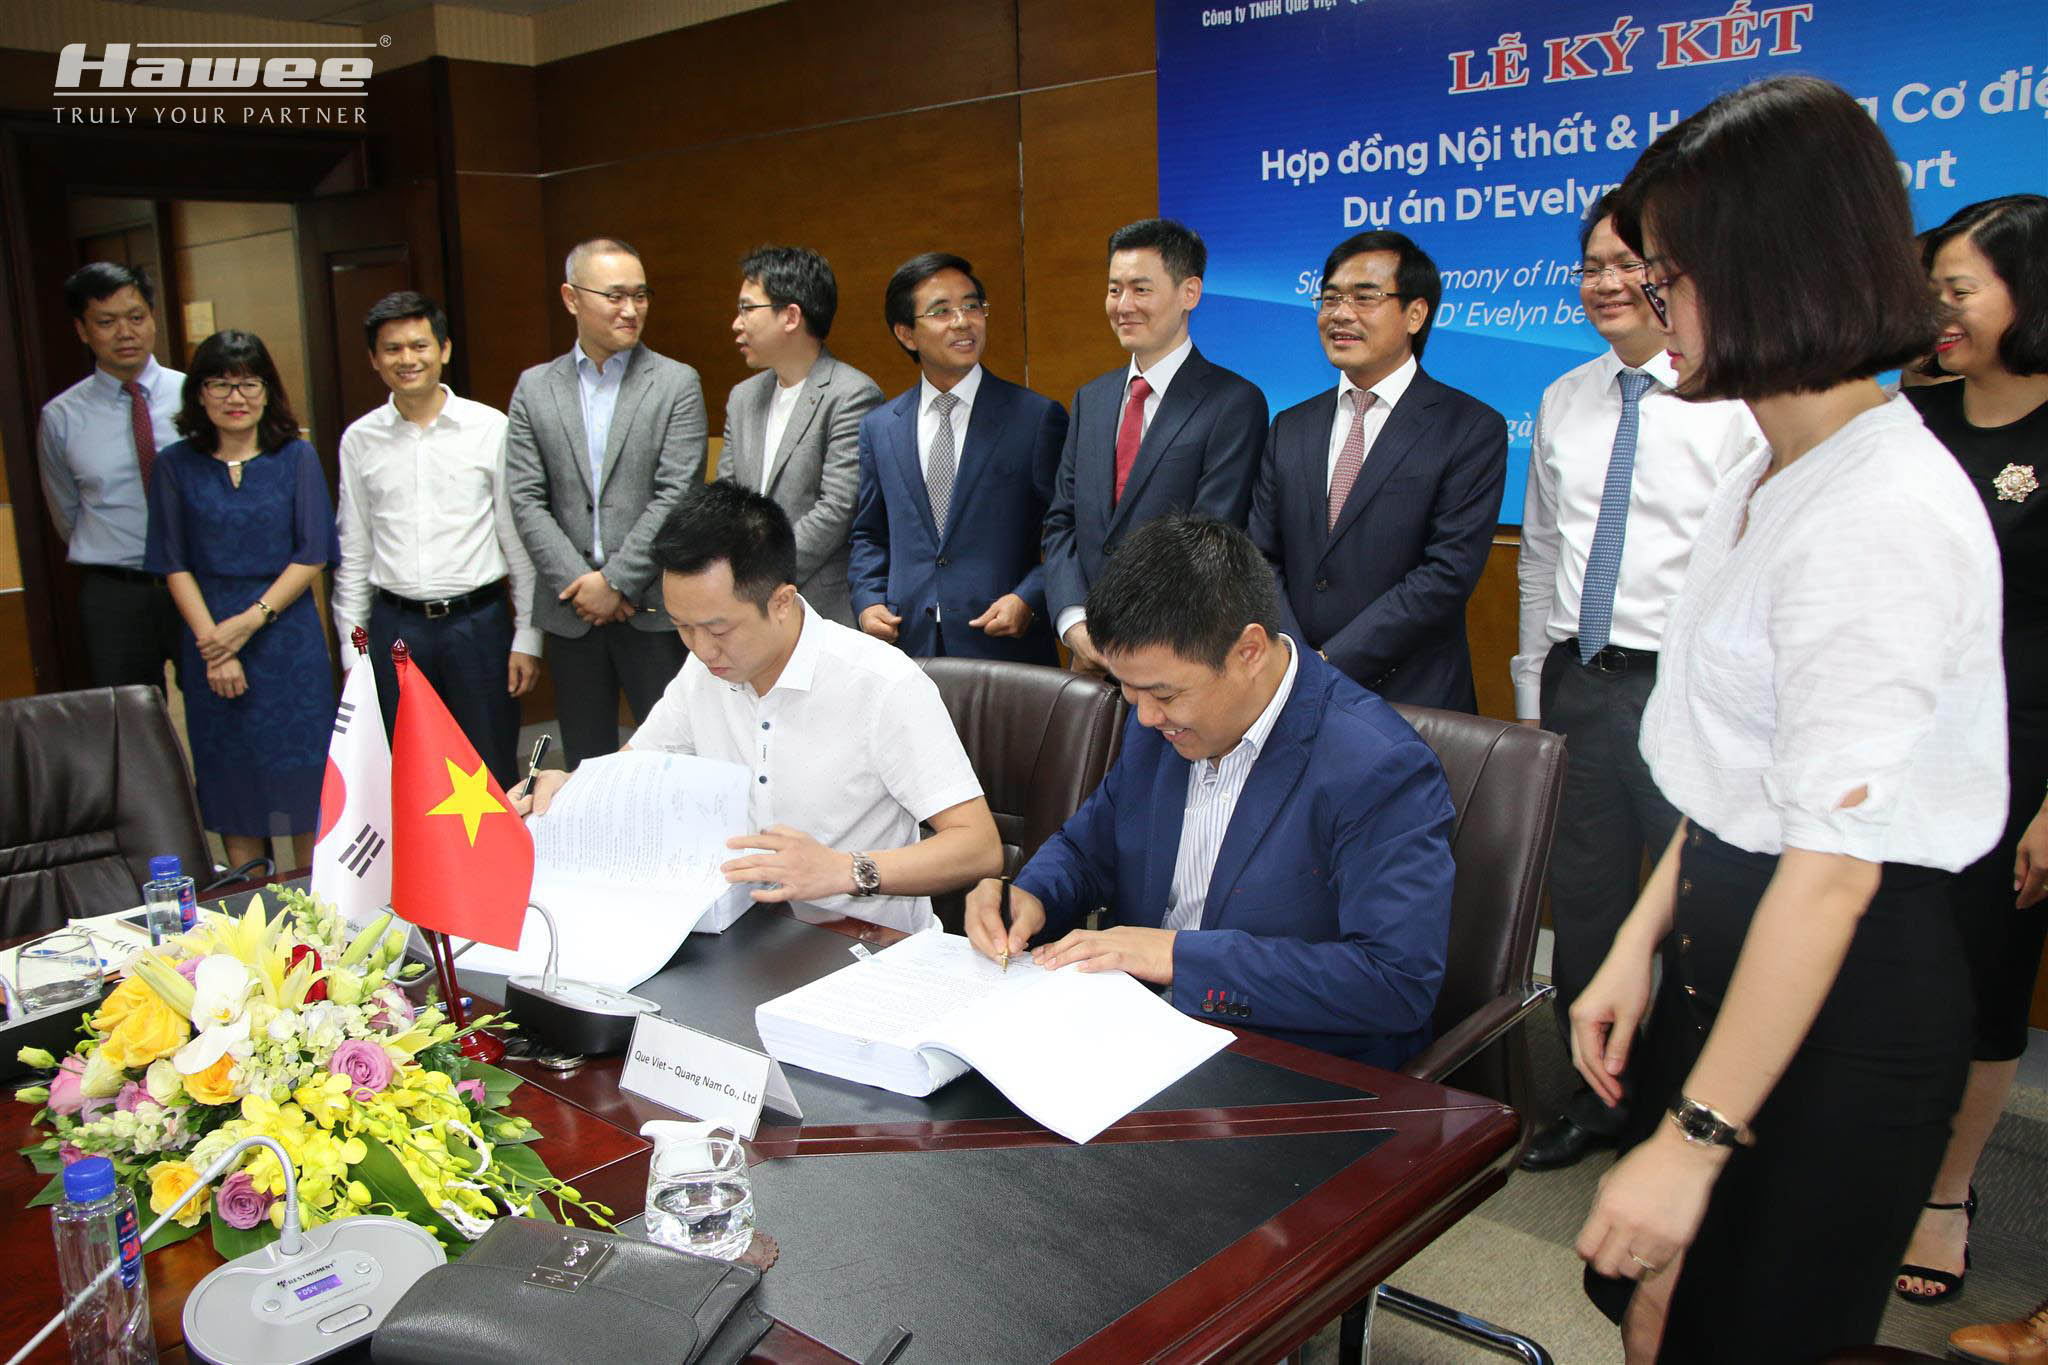 Ông Lê Vũ Long – Giám đốc Hawee Cơ điện thực hiện ký kết Hợp đồng dưới sự chứng kiến của BLĐ Tập đoàn Thành Công & BLĐ Hawee Group